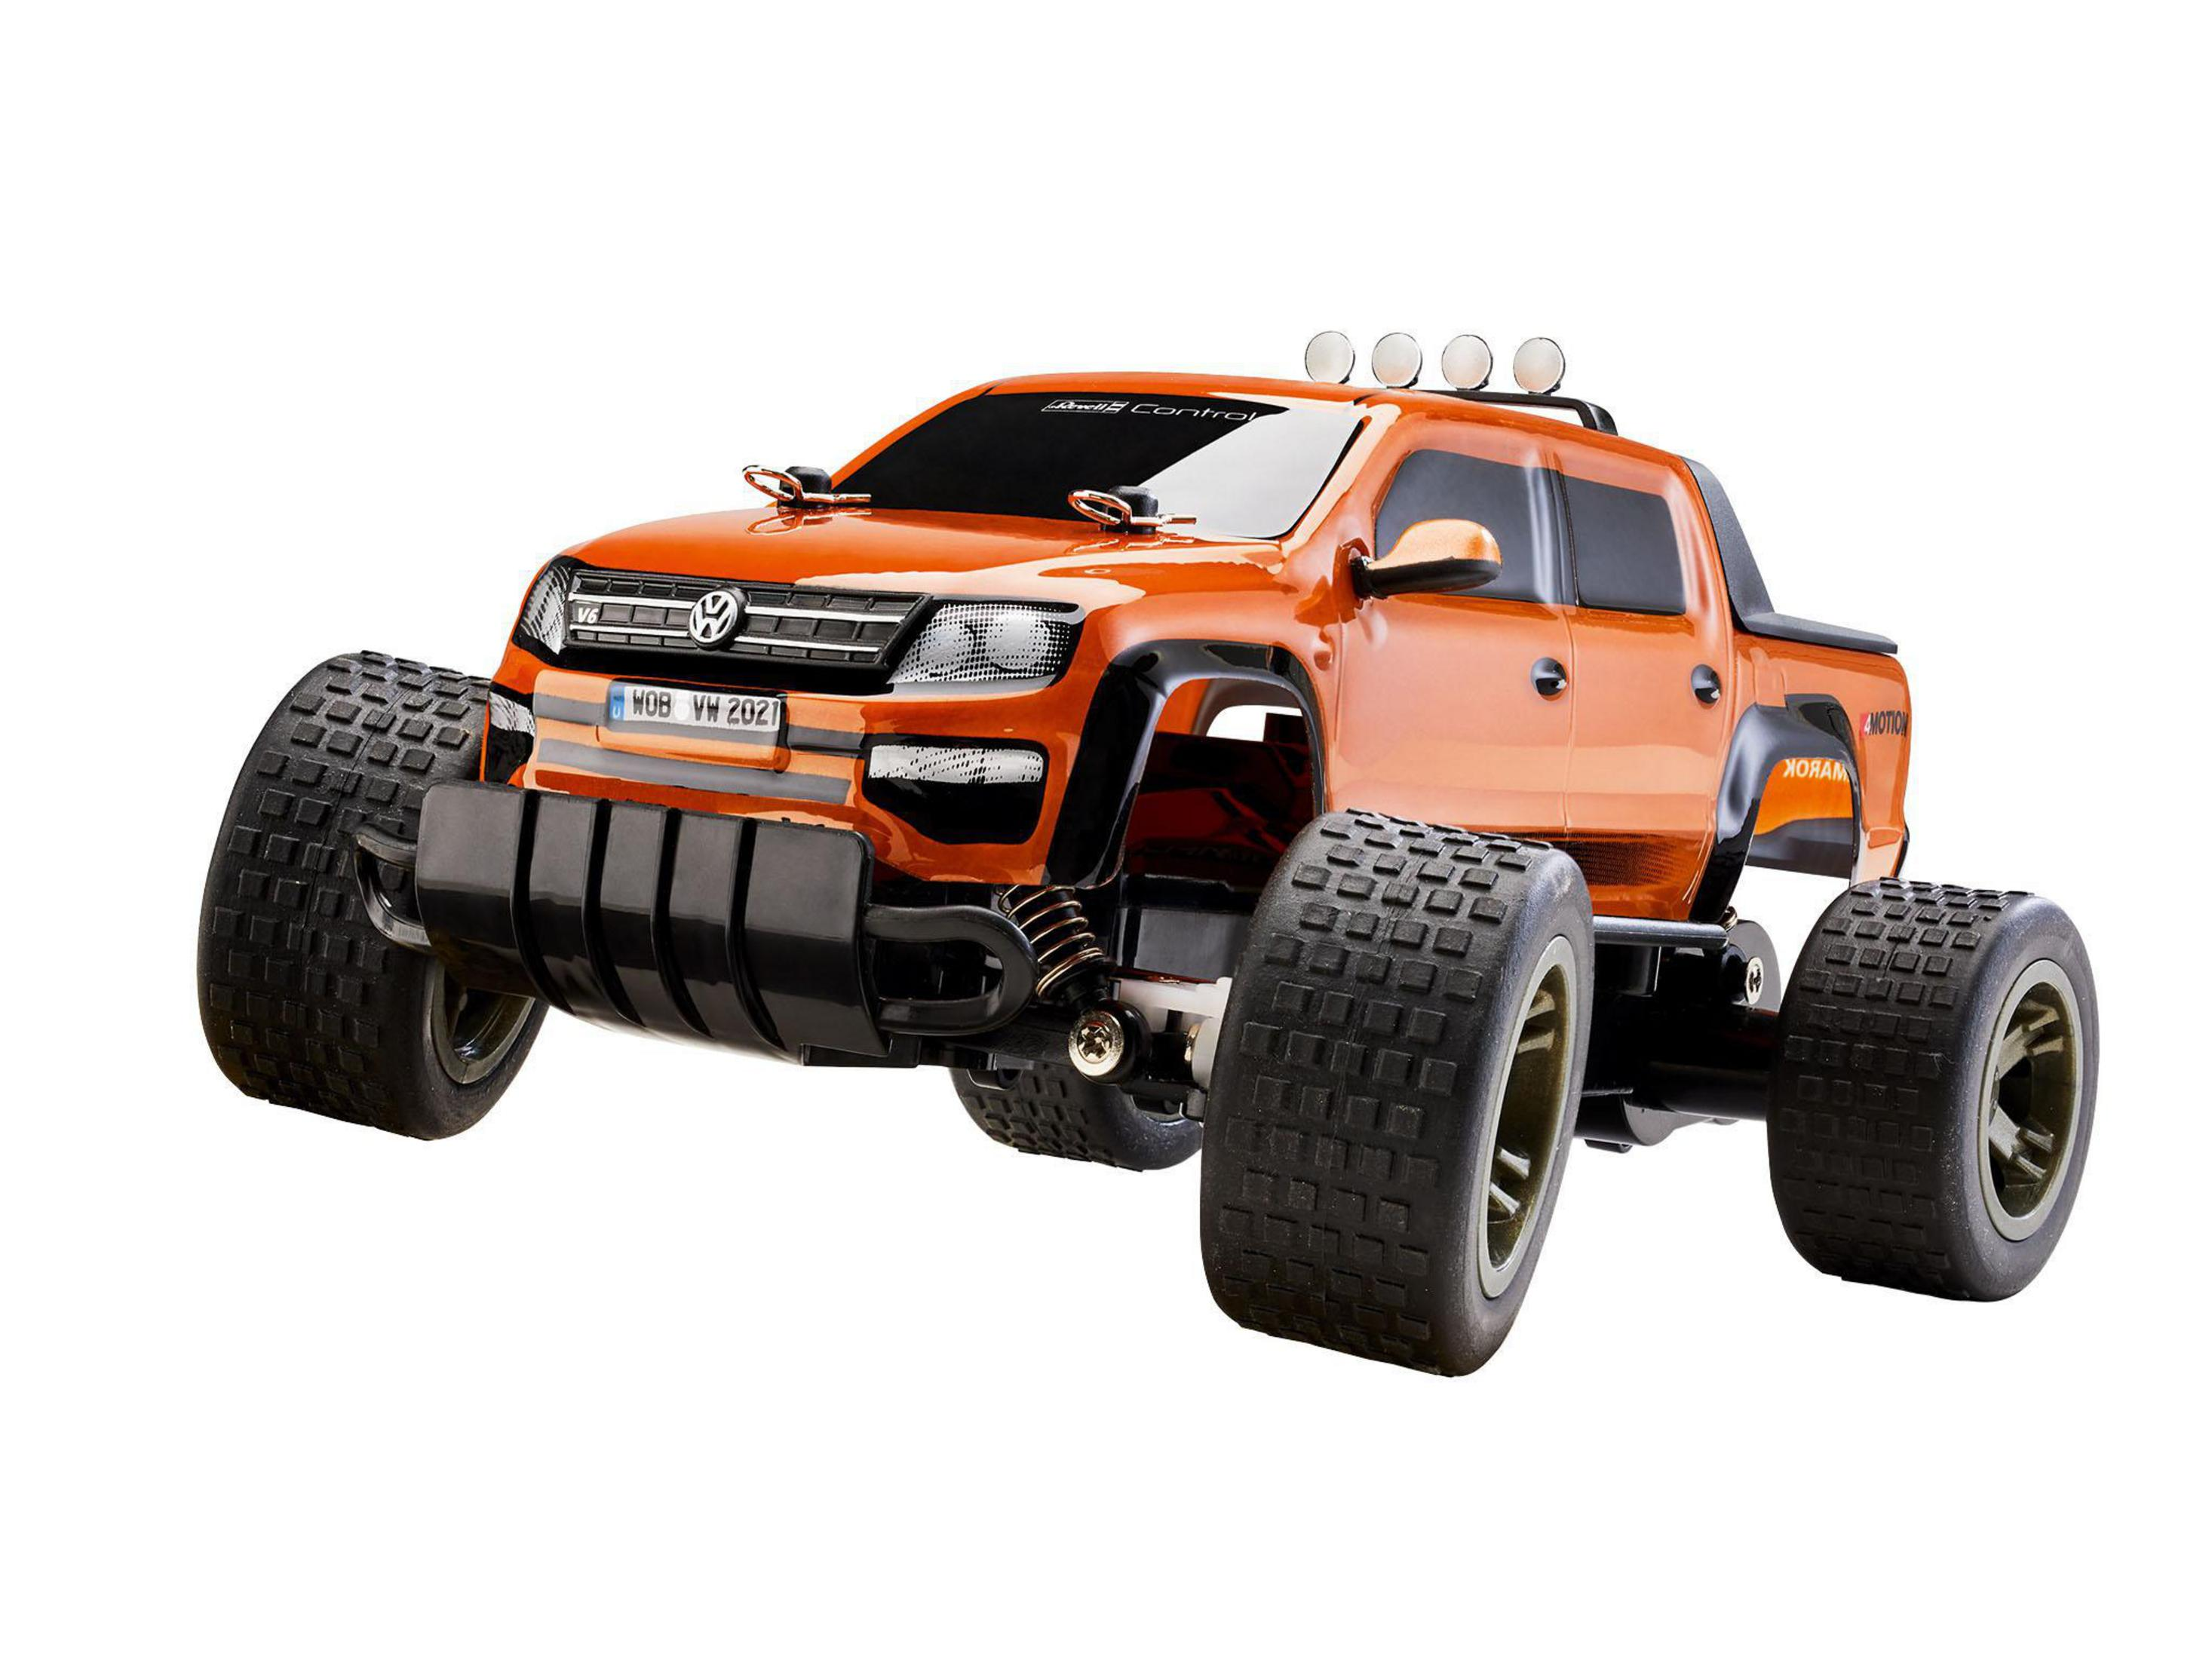 Spielzeugfahrzeug, REVELL R/C AMAROK 24456 VW TRUGGY Orange/Schwarz